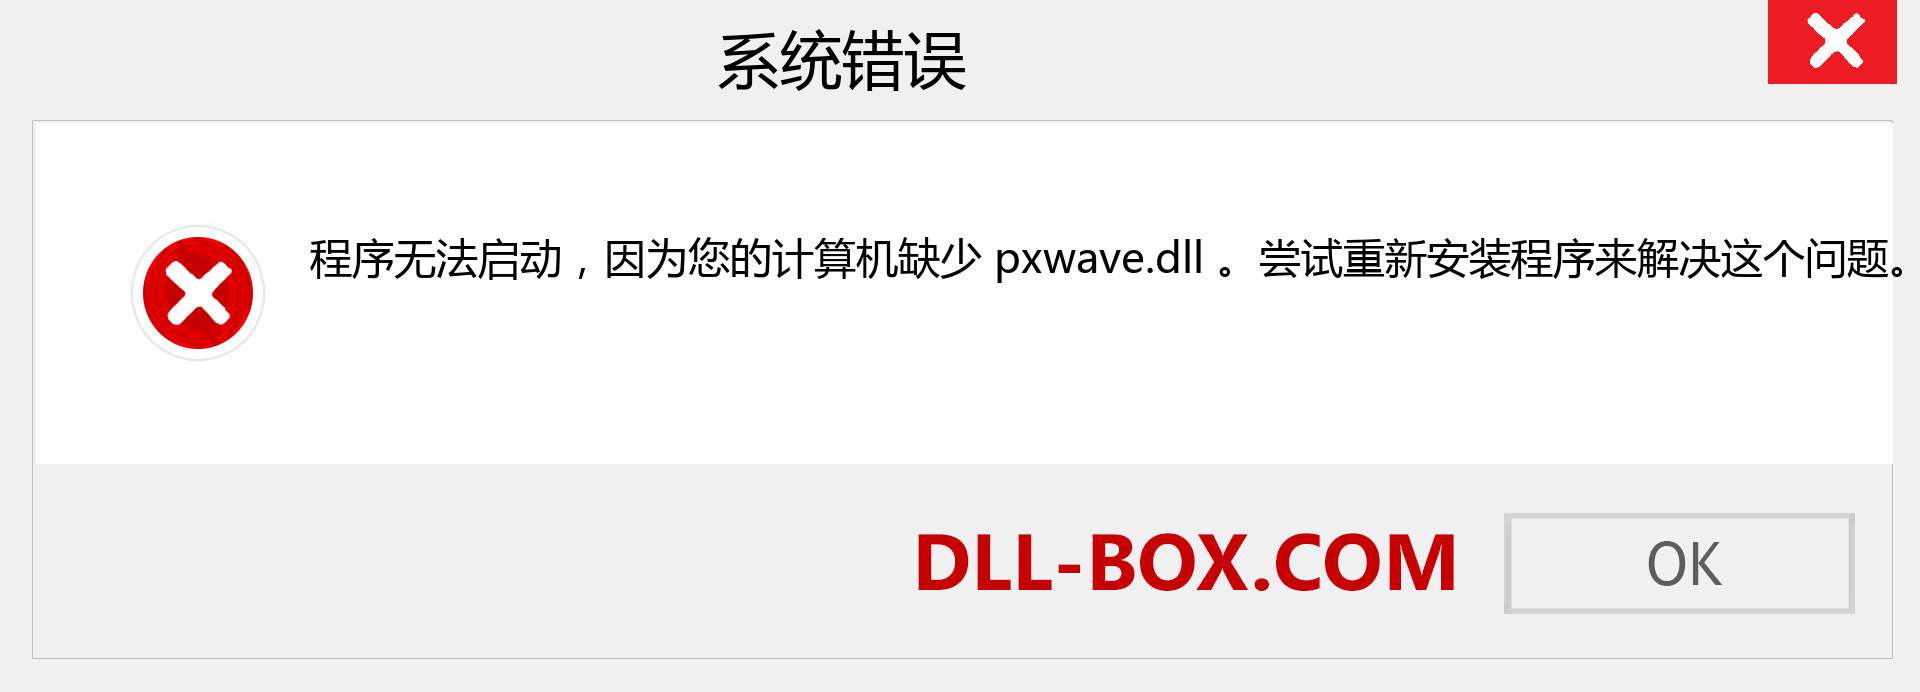 pxwave.dll 文件丢失？。 适用于 Windows 7、8、10 的下载 - 修复 Windows、照片、图像上的 pxwave dll 丢失错误